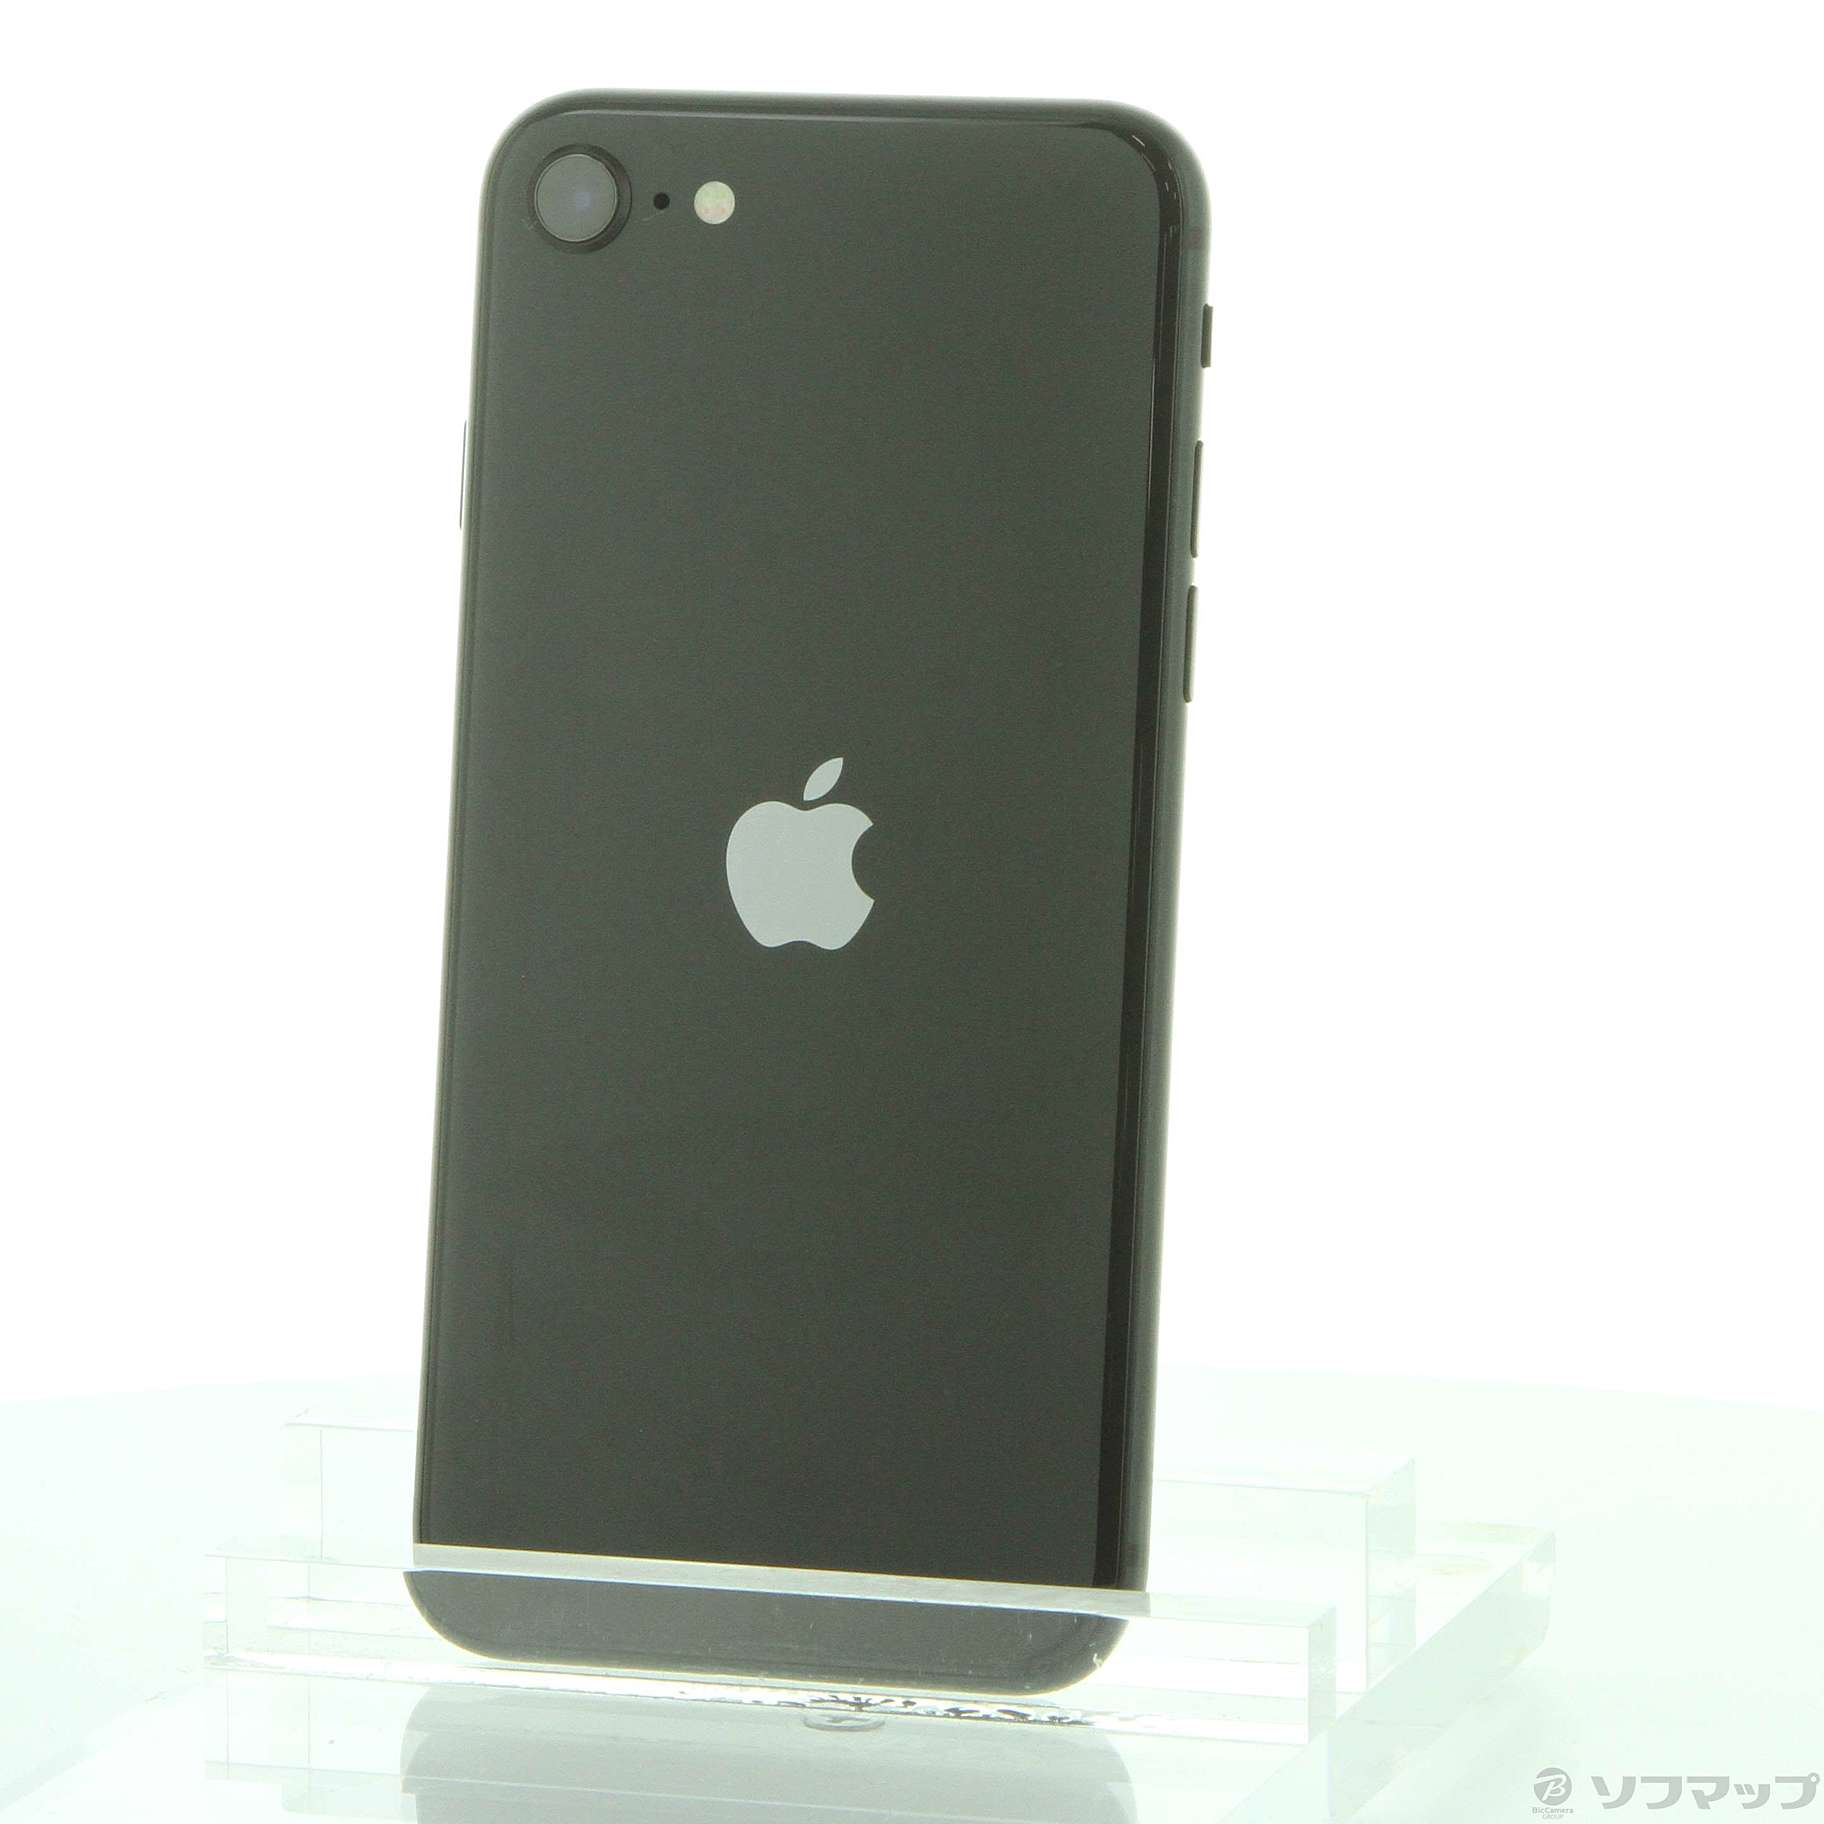 割引価格iPhone SE 第2世代 64GB MX9R2J/A ブラック A2296 スマートフォン本体